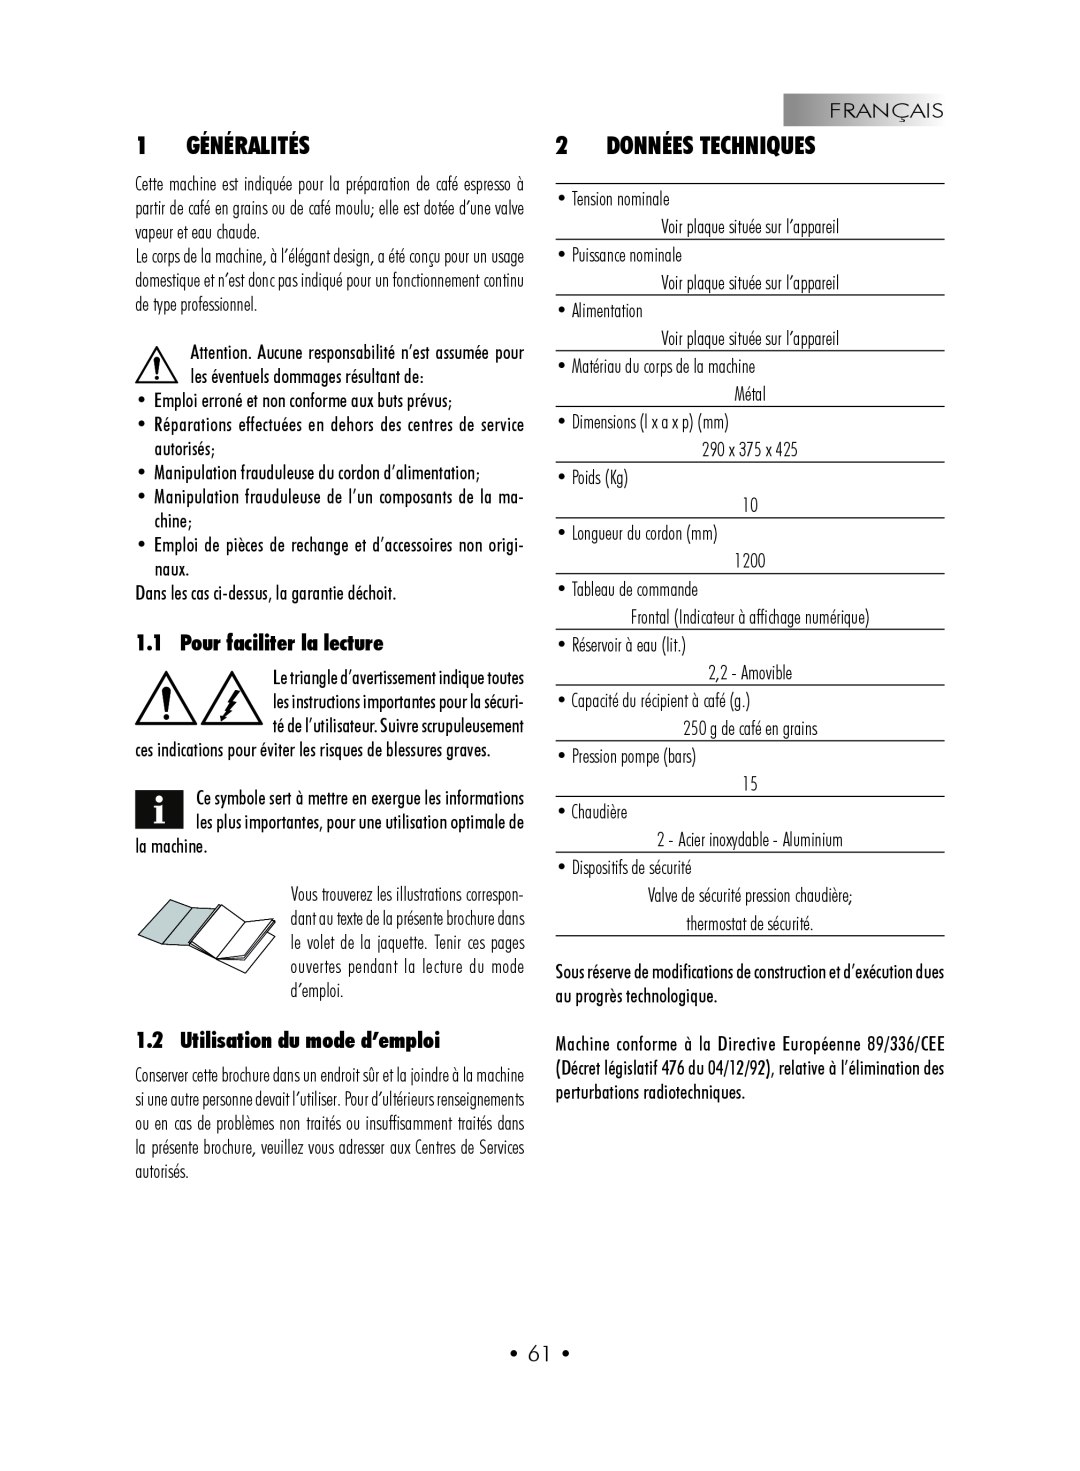 Gaggia SUP027YDR manual 1 GÉNÉRALITÉS, Données Techniques, Pour faciliter la lecture, Utilisation du mode d’emploi 